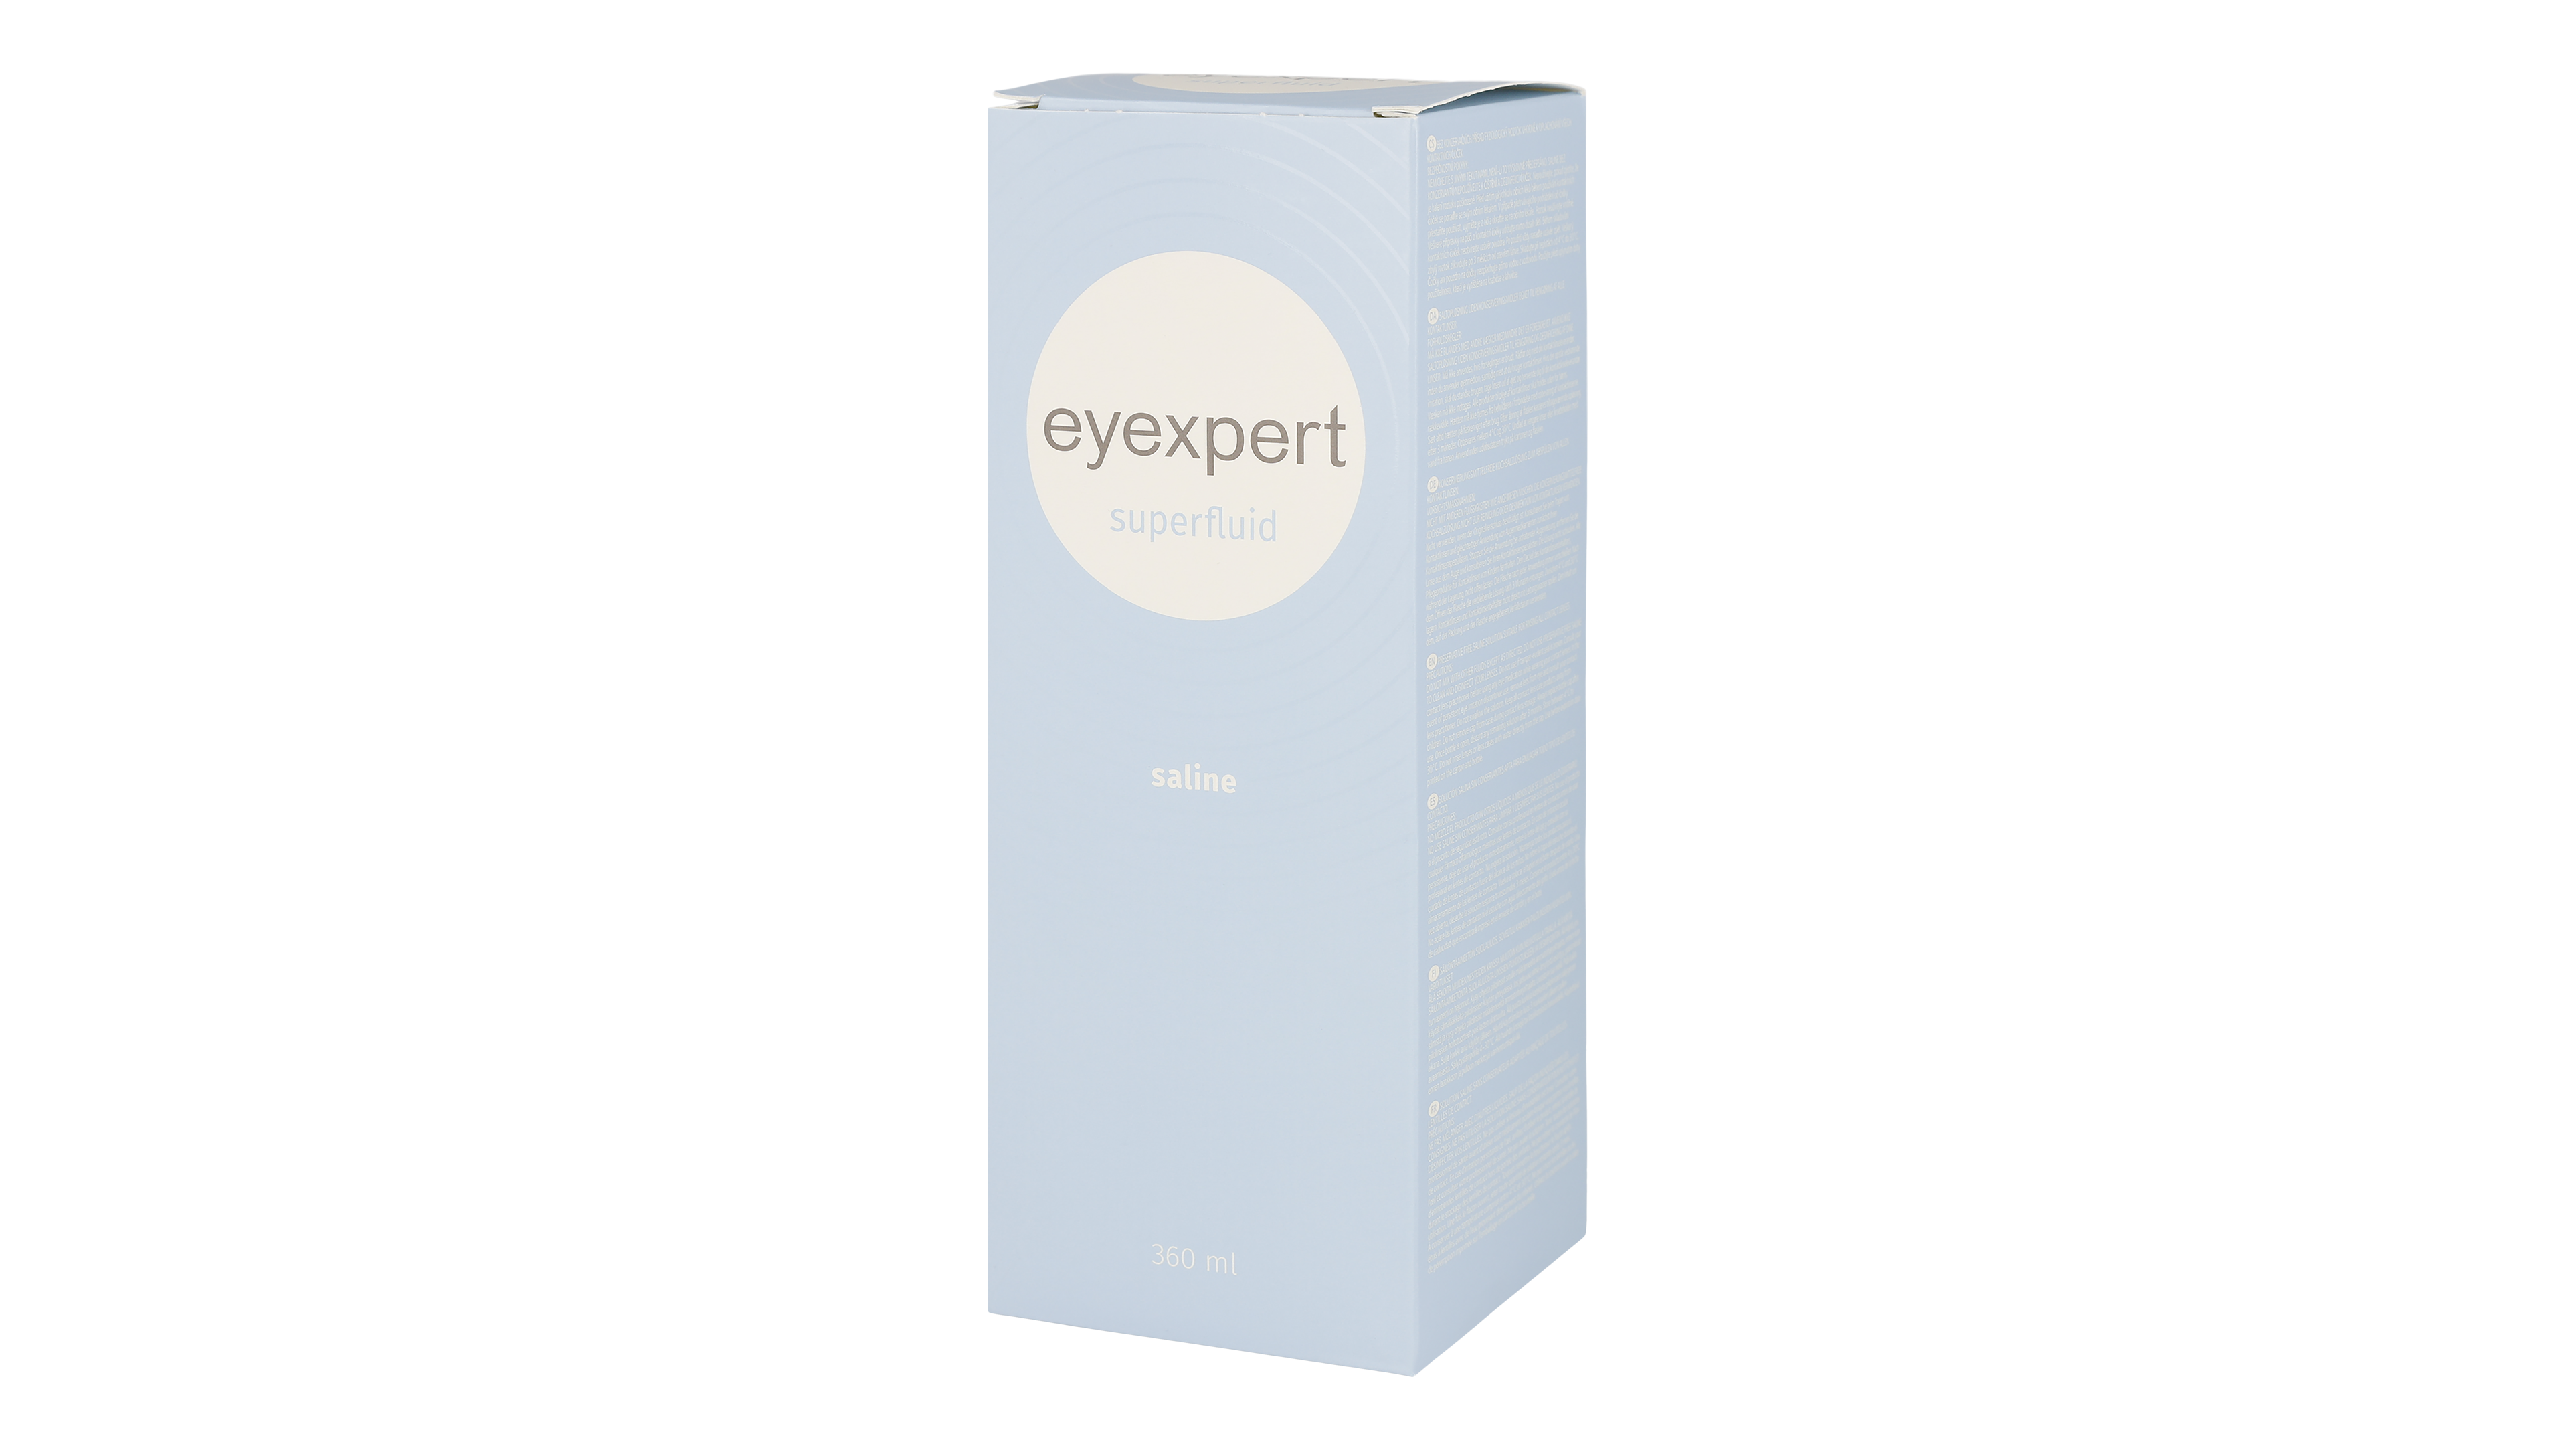 Angle_Left01 Eyexpert Eyexpert Superfluid 360ml